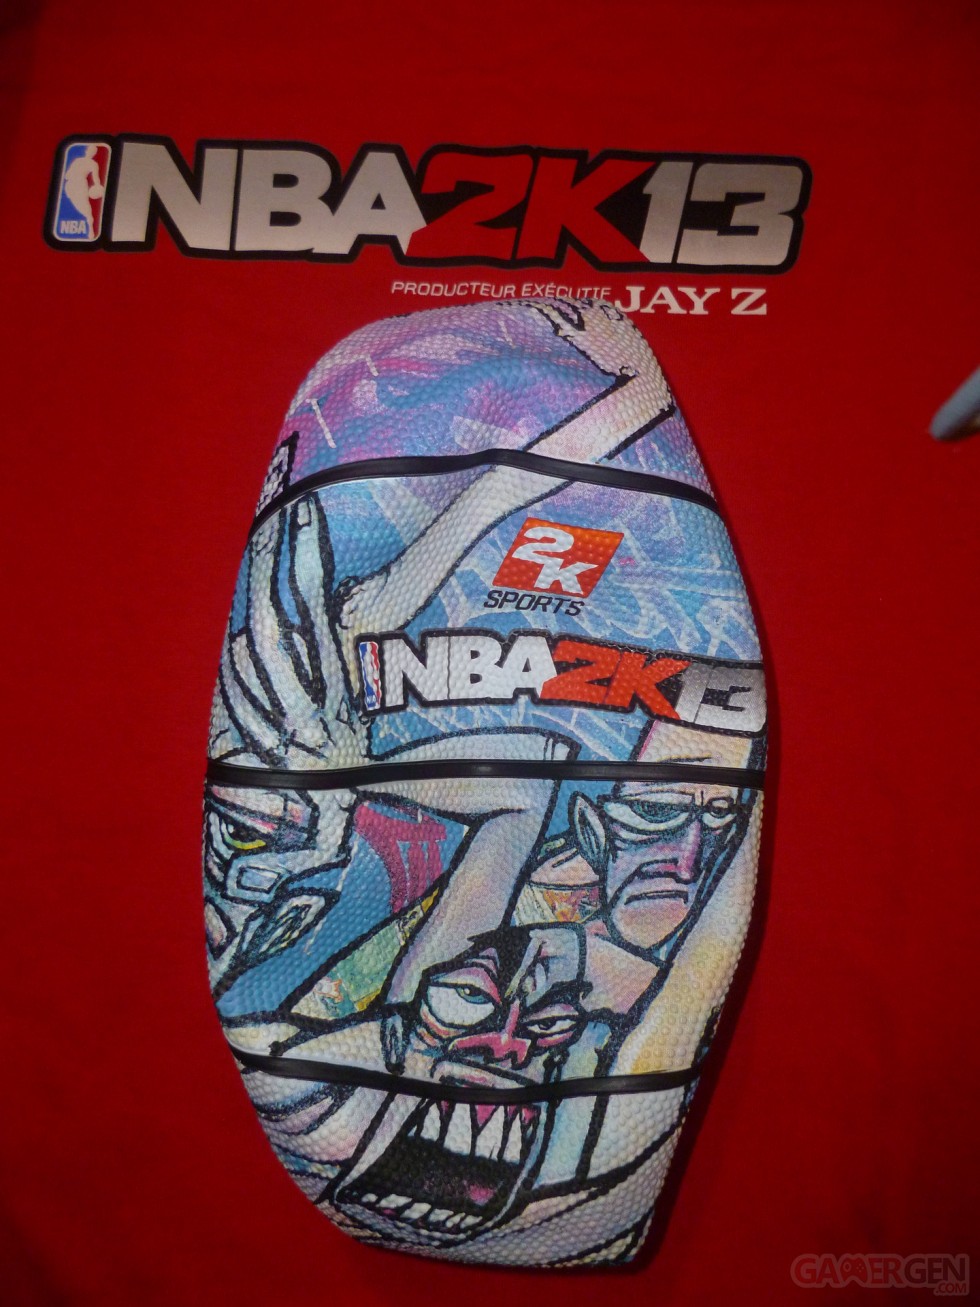 deballage NBA 2k13 dynasty edition (9)